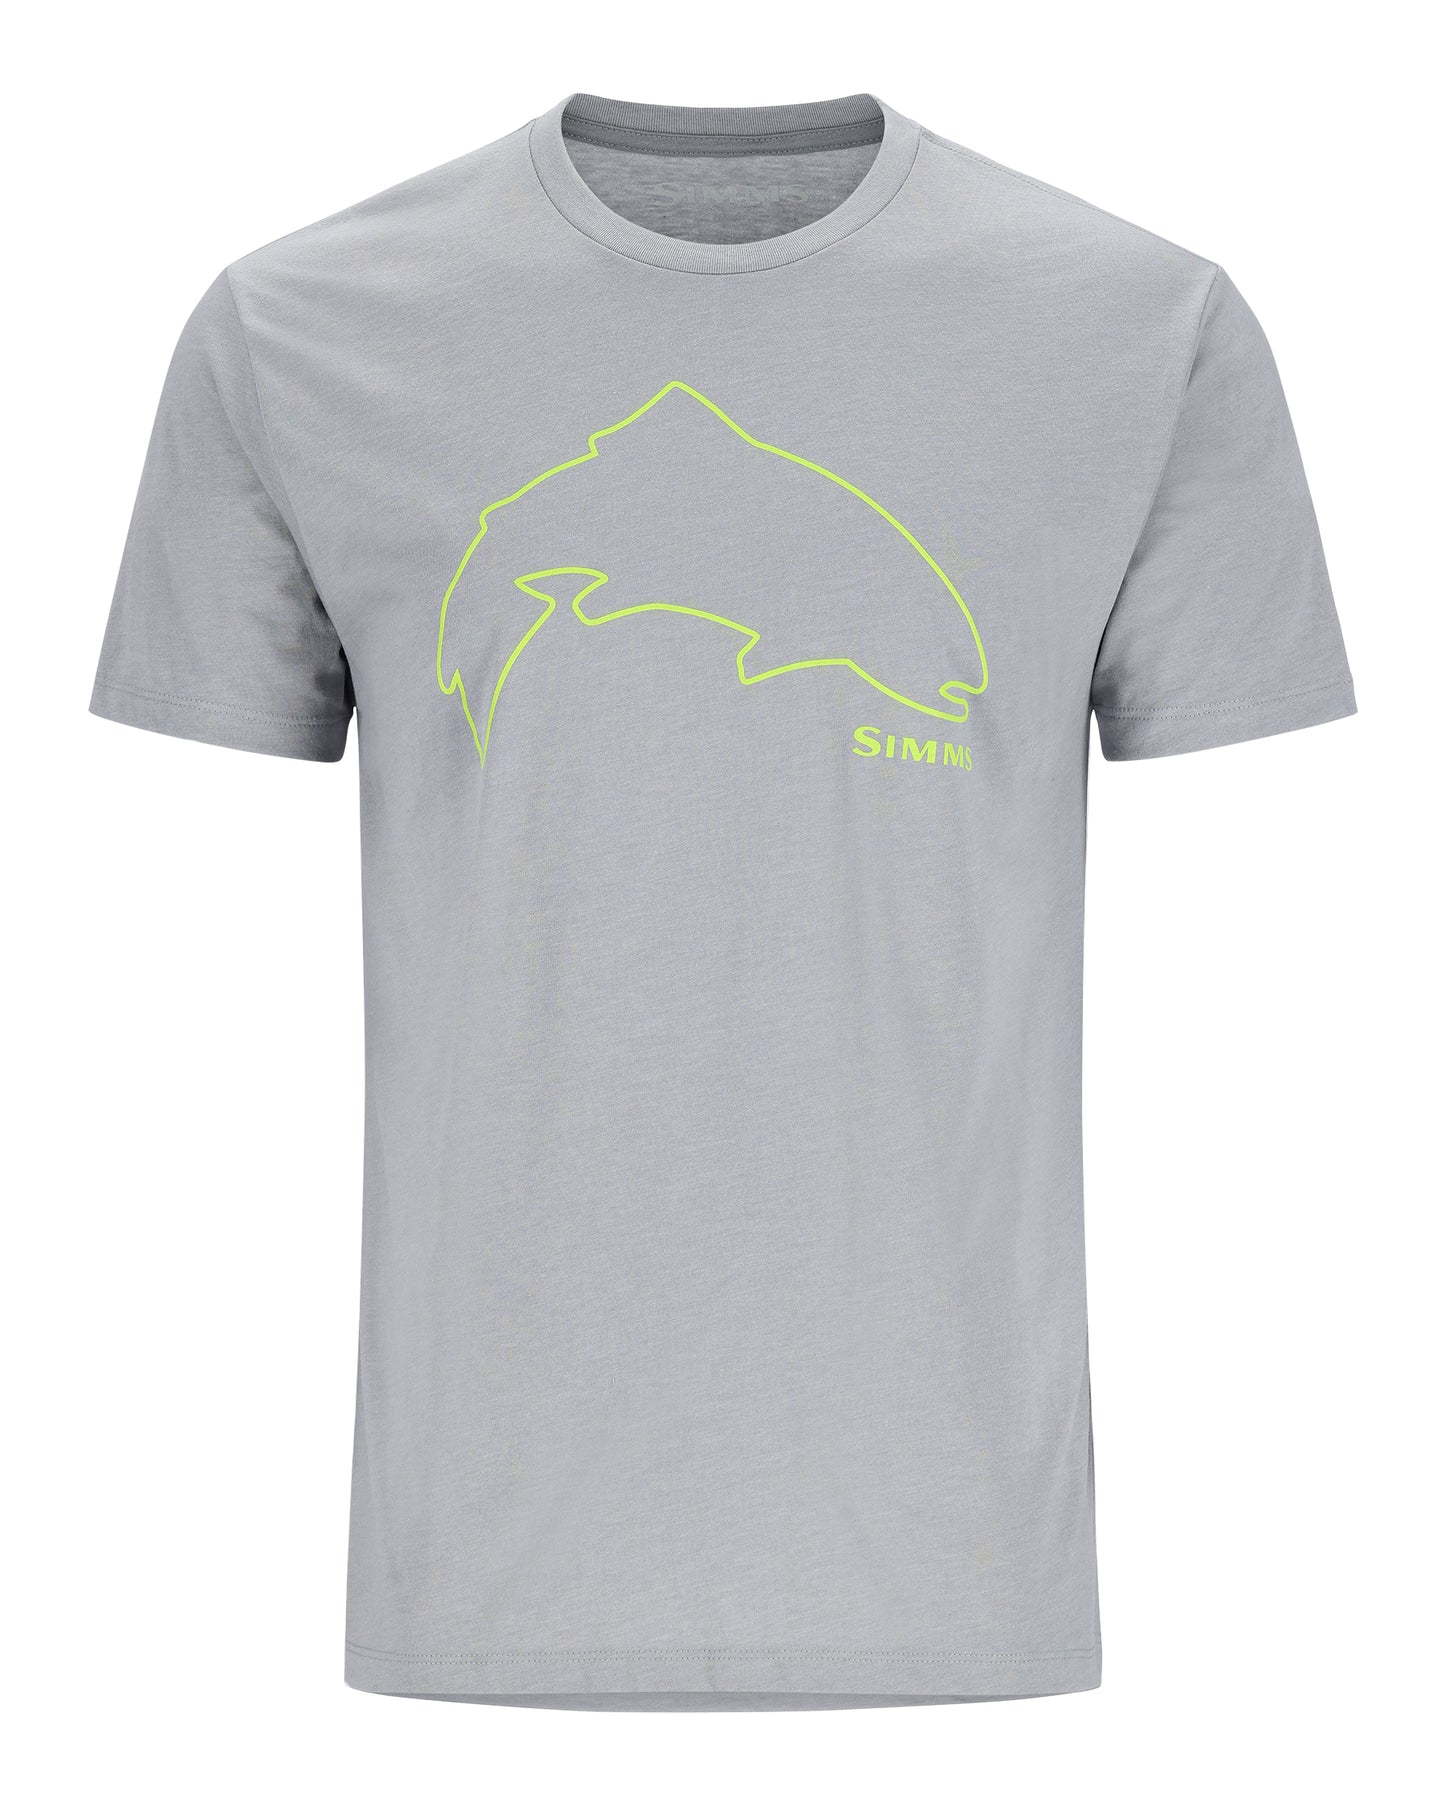    13519-862-trout-outline-t-shirt-Mannequin-s23-front